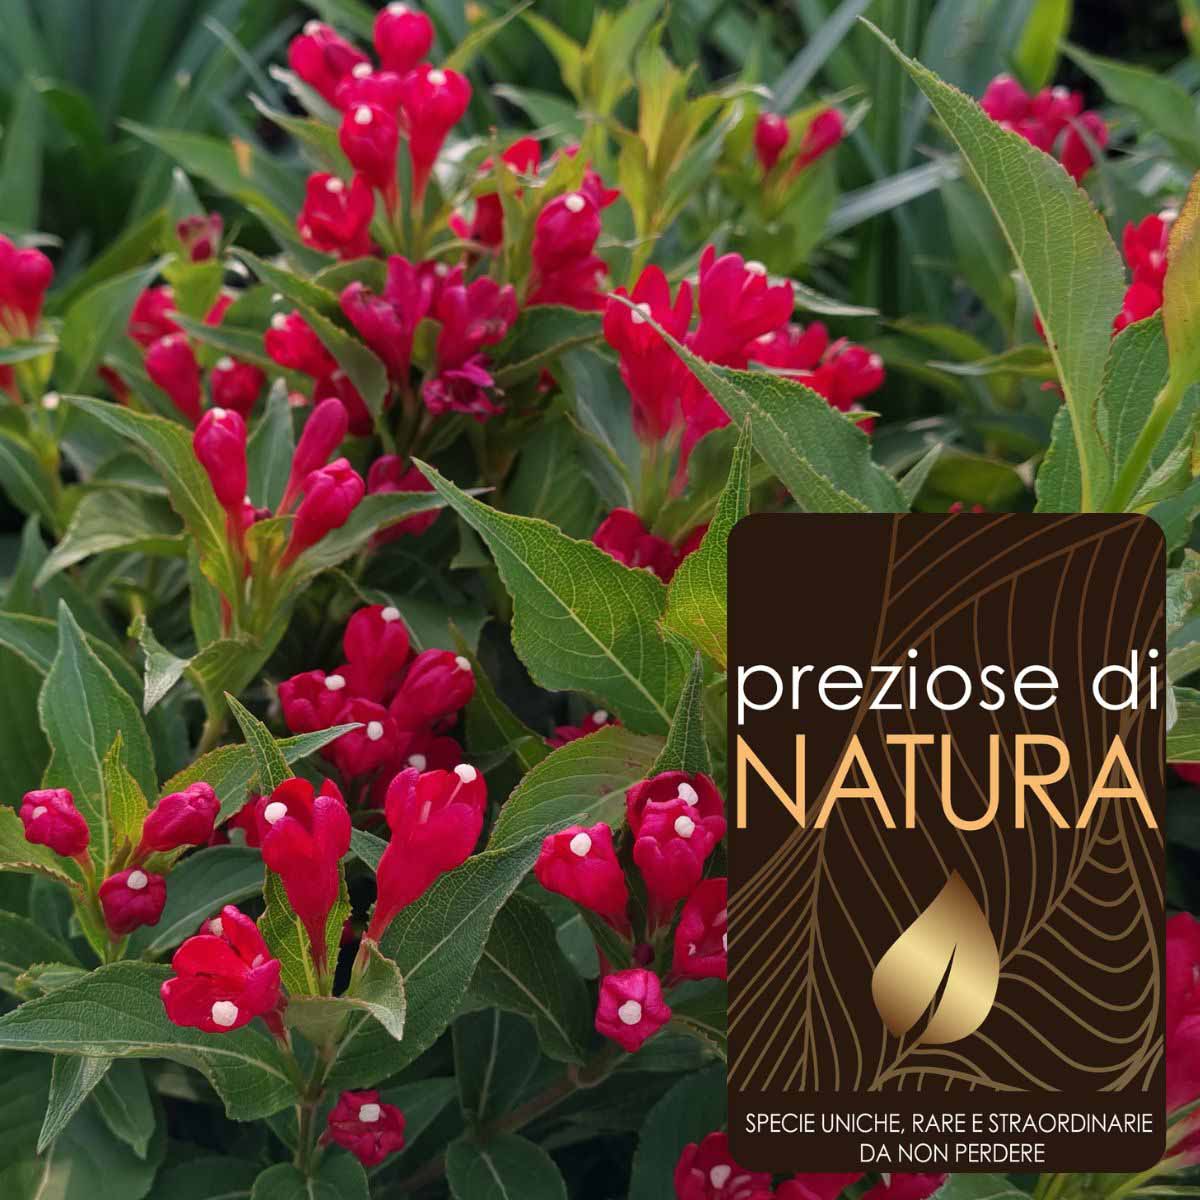 Preziose di Natura – Weigela “All Summer Red”